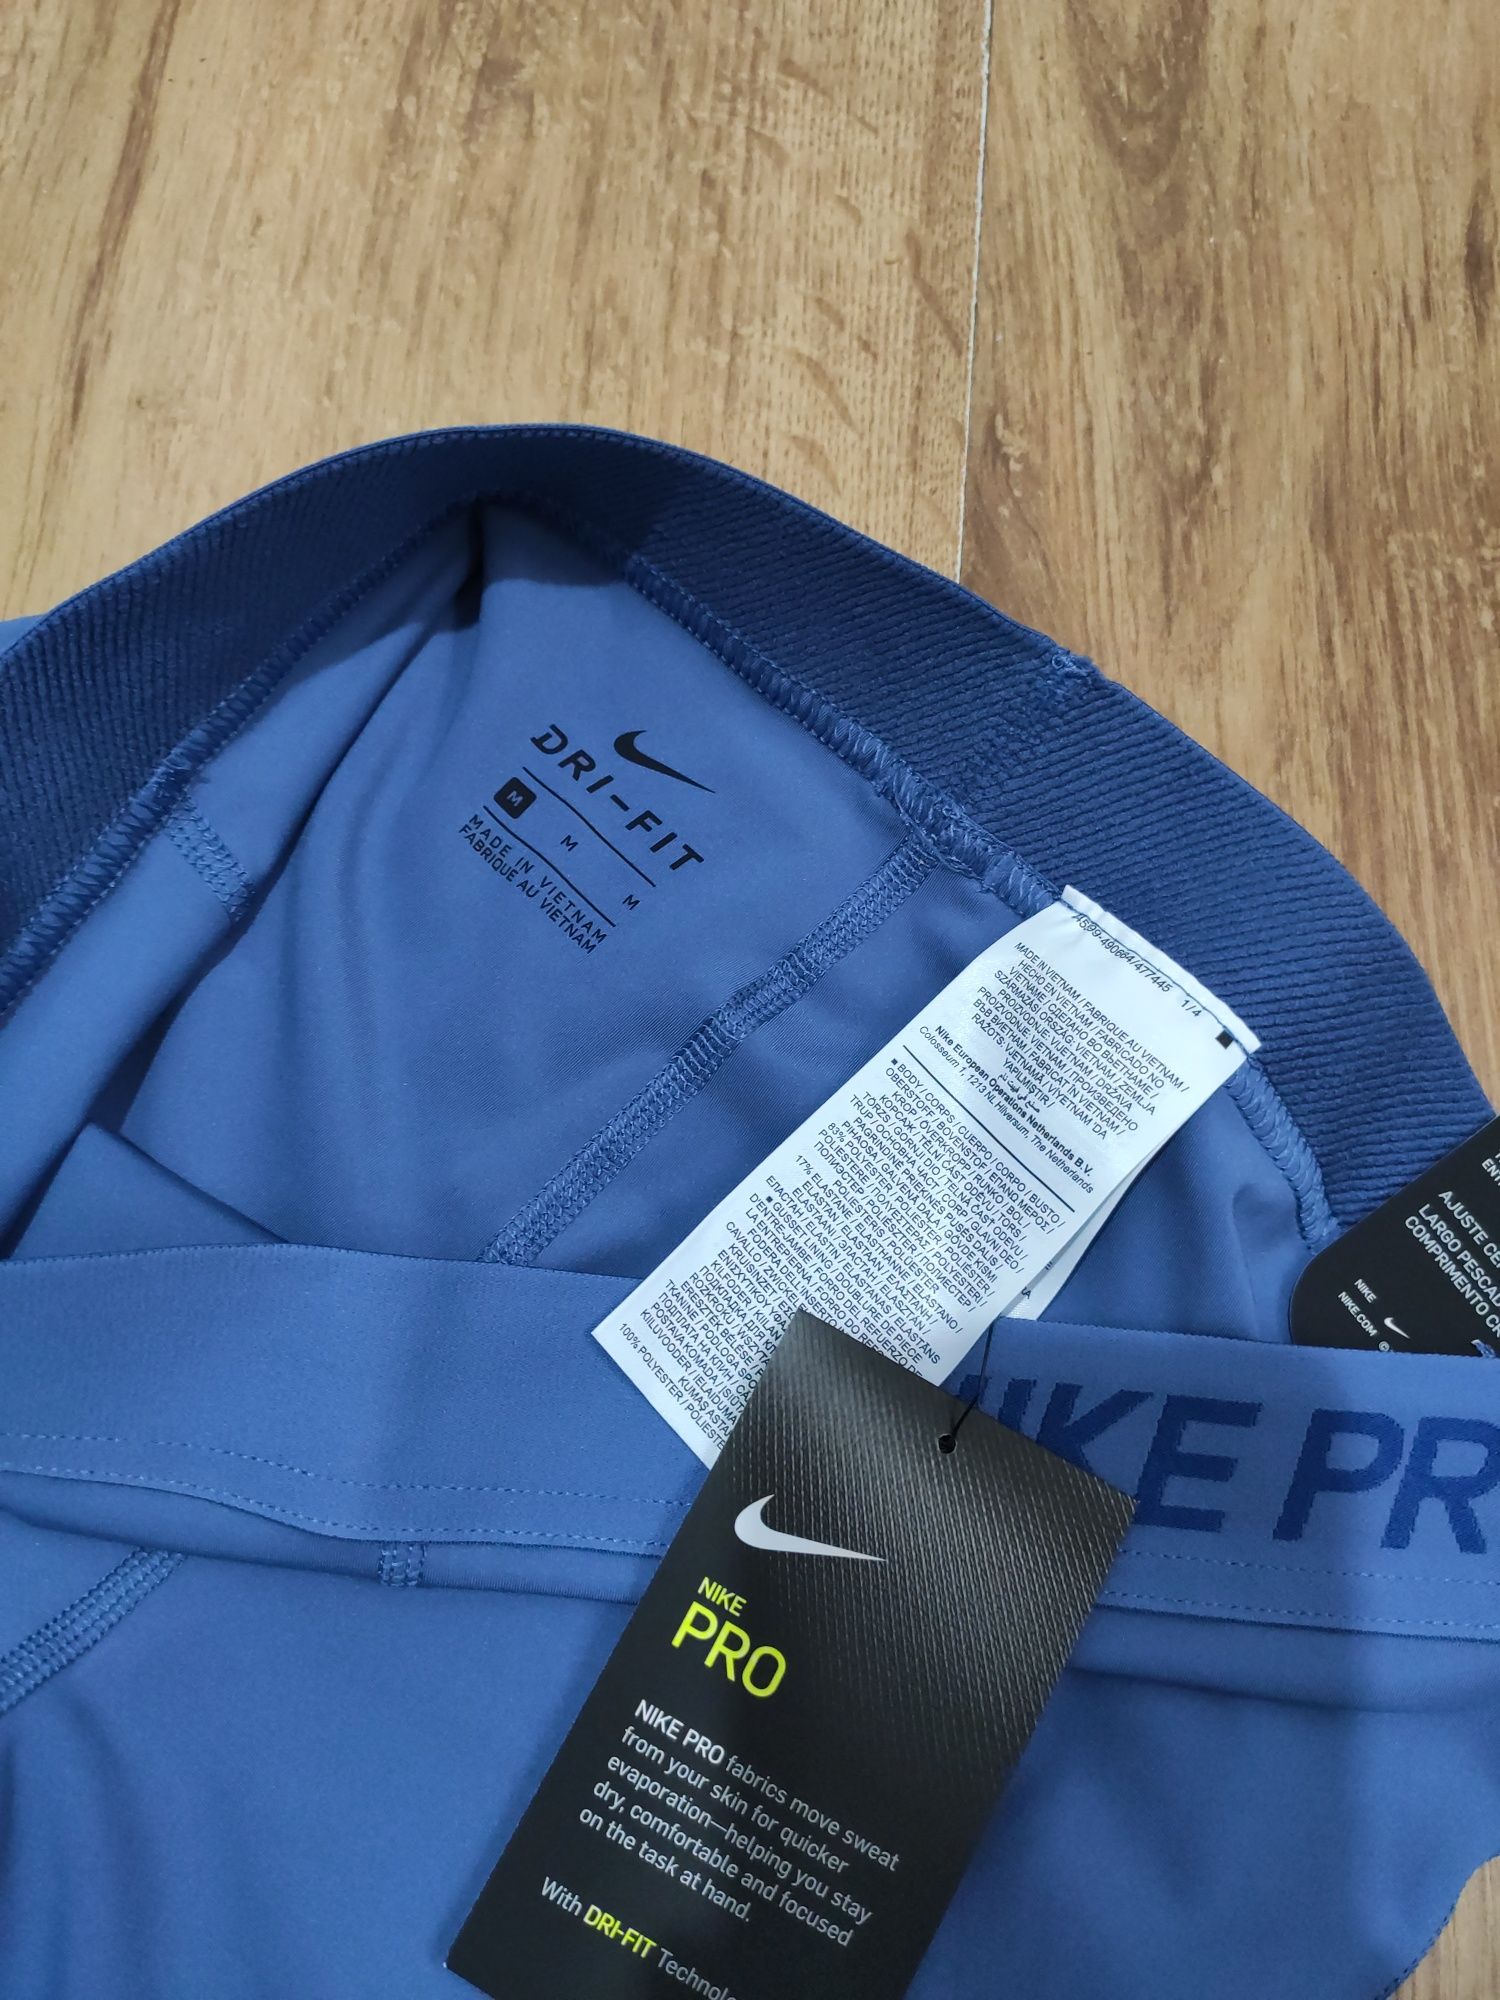 Colanți damă Nike Pro trei sferturi mărimea M